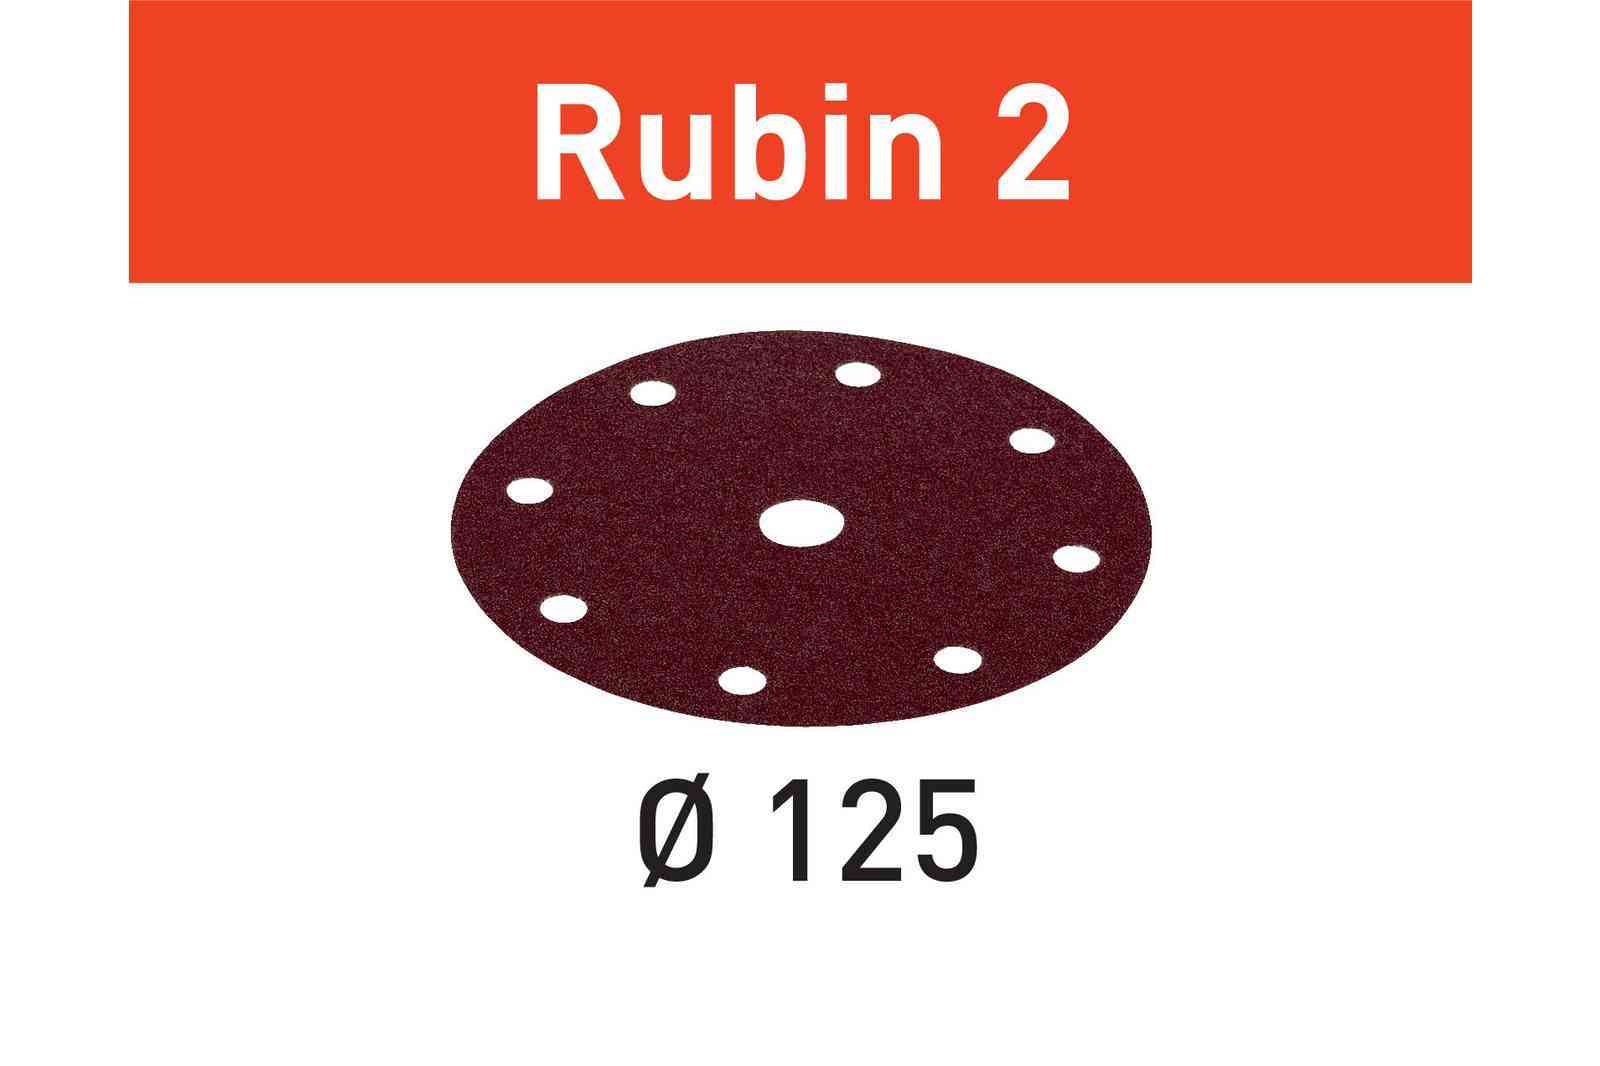 Disco abrasivo Rubin 2 STF D125/8 P150 RU2/50 - Festool 499098